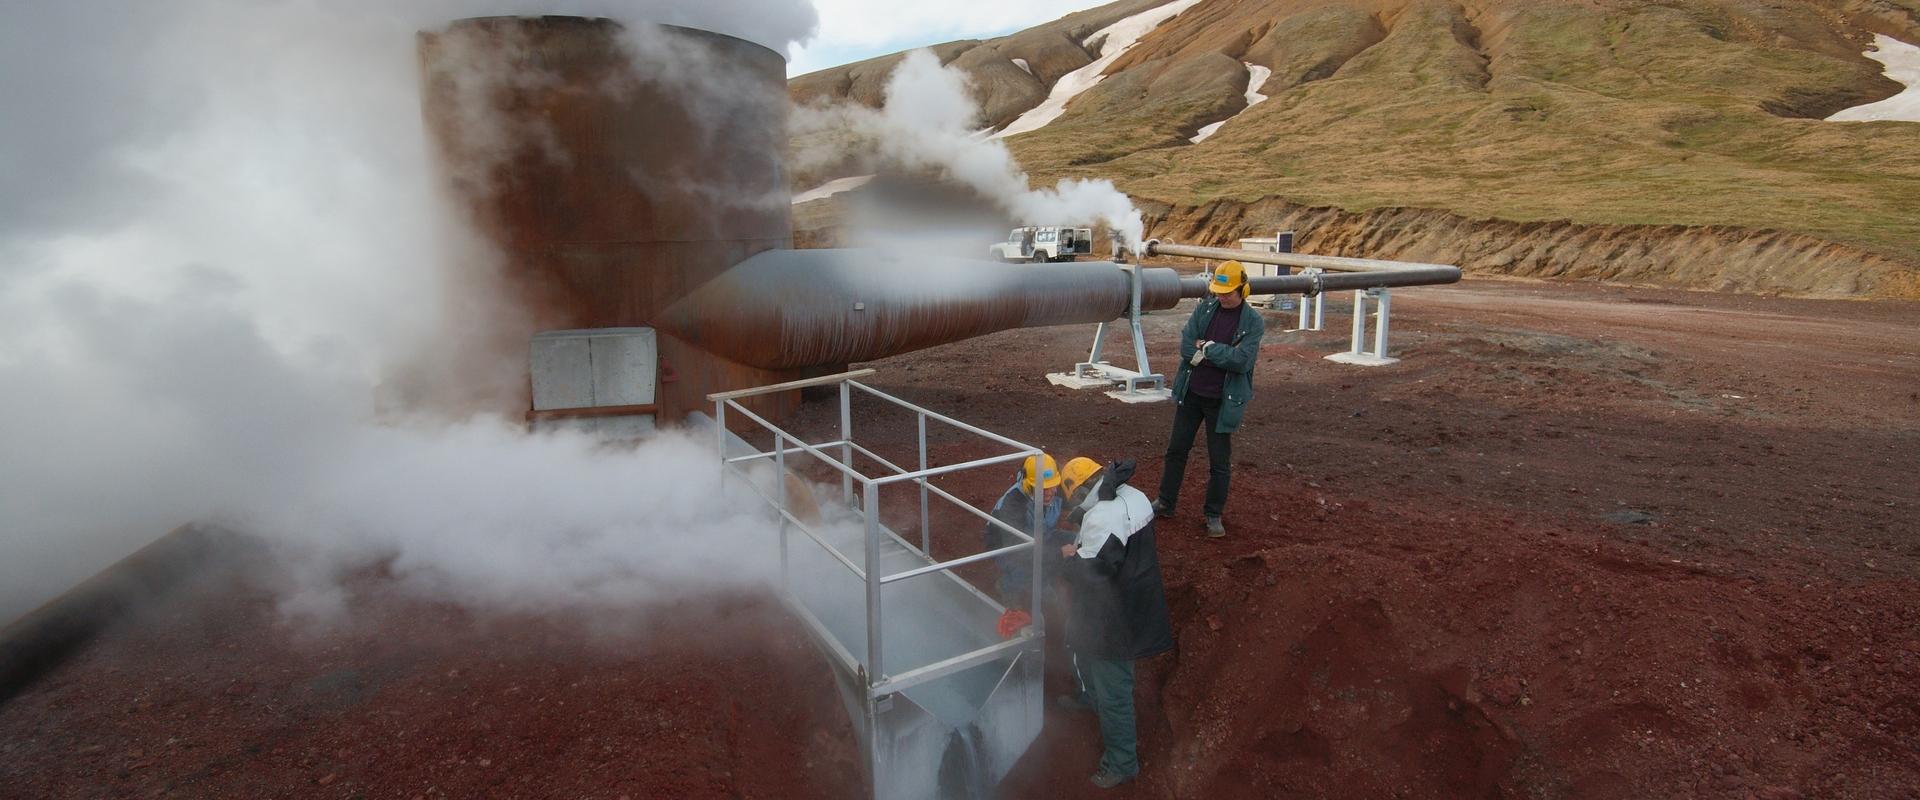 Mission d'échantillonnage d'un puits géothermique, Islande